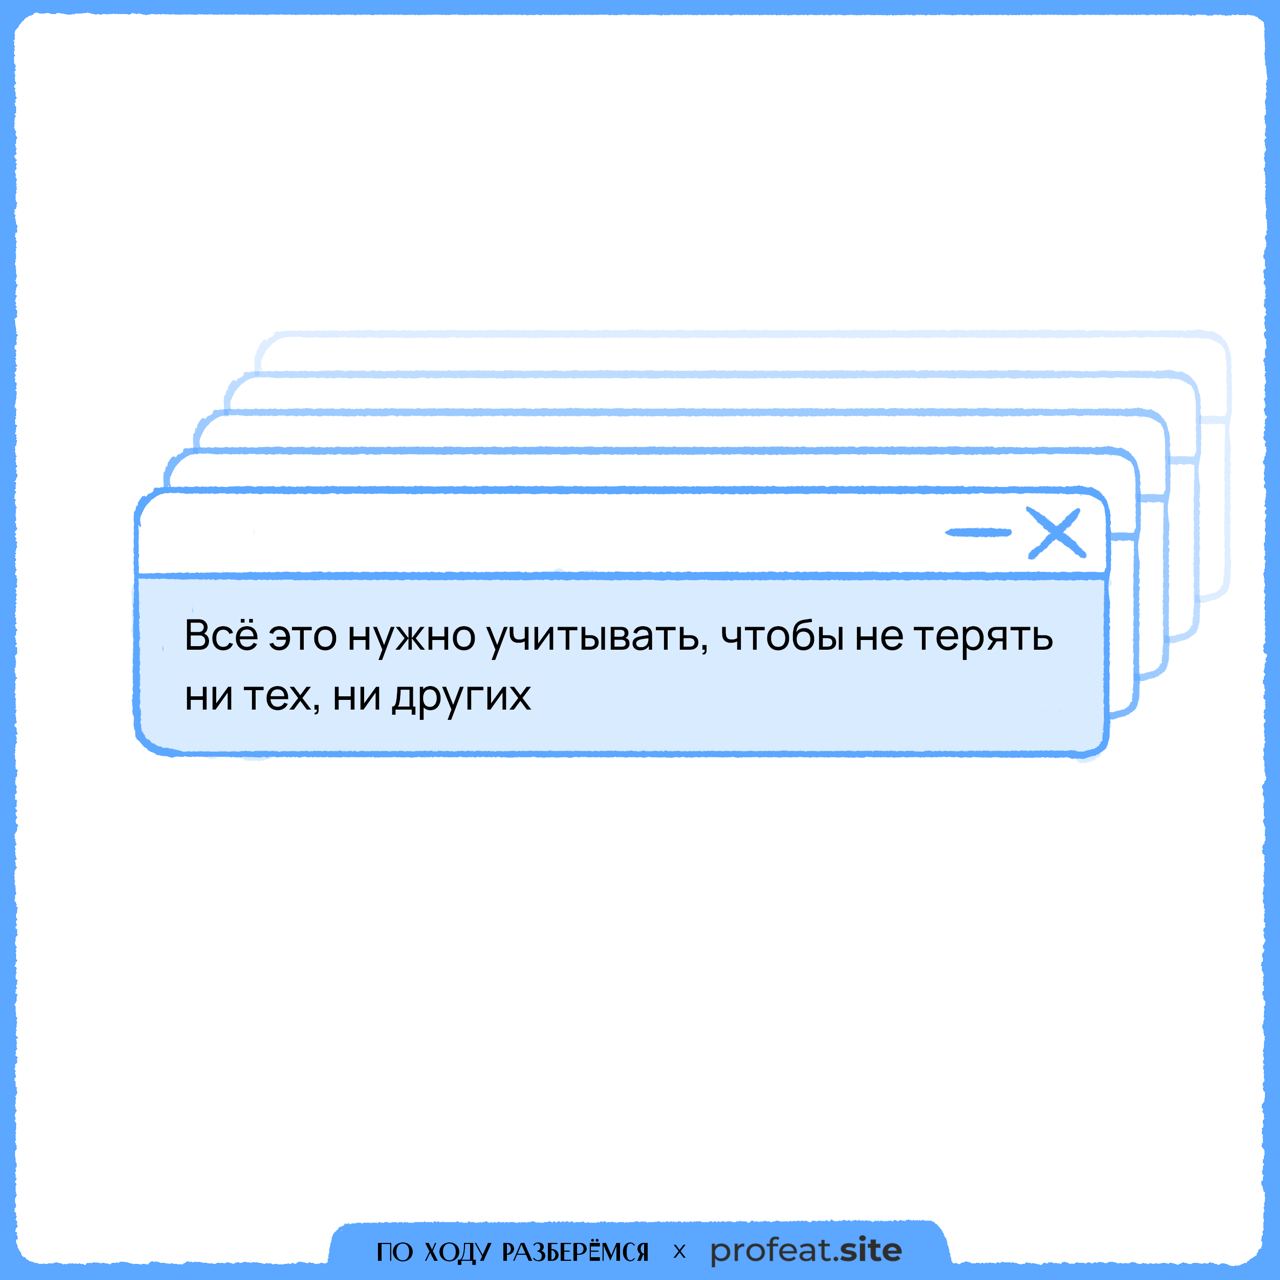 Как пишется телеграмм на русском фото 94